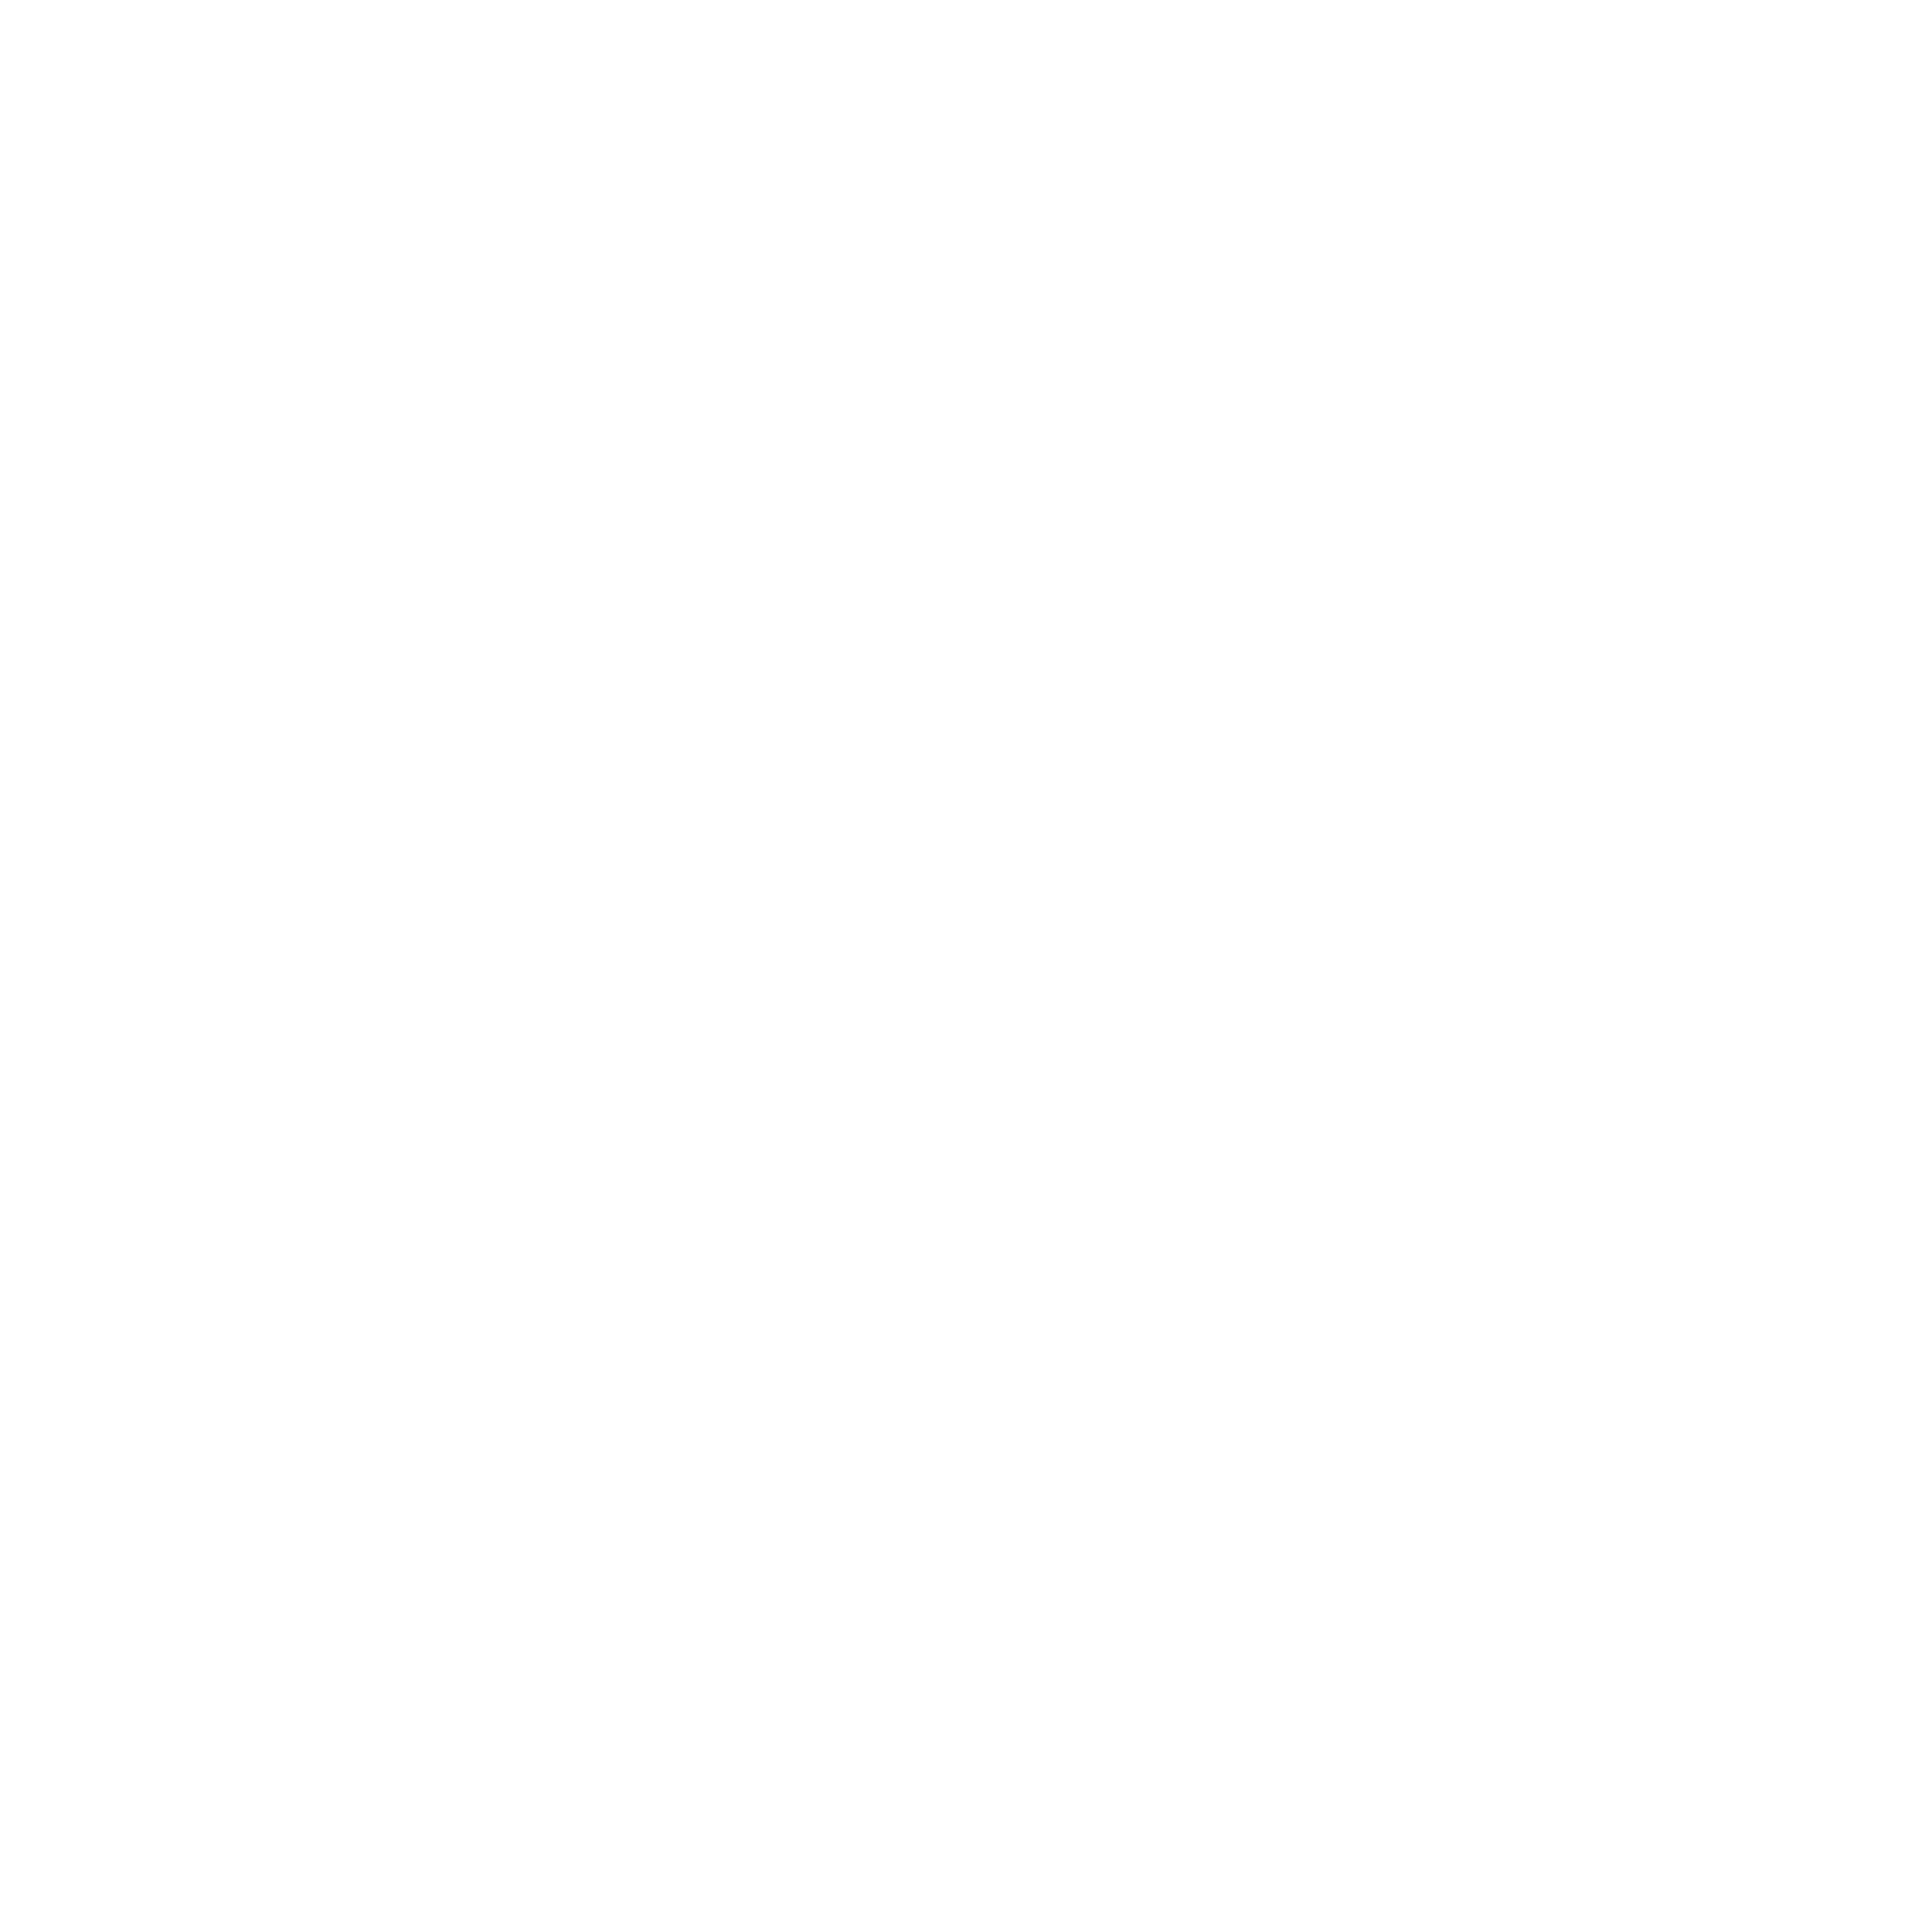 Wii Design Studio